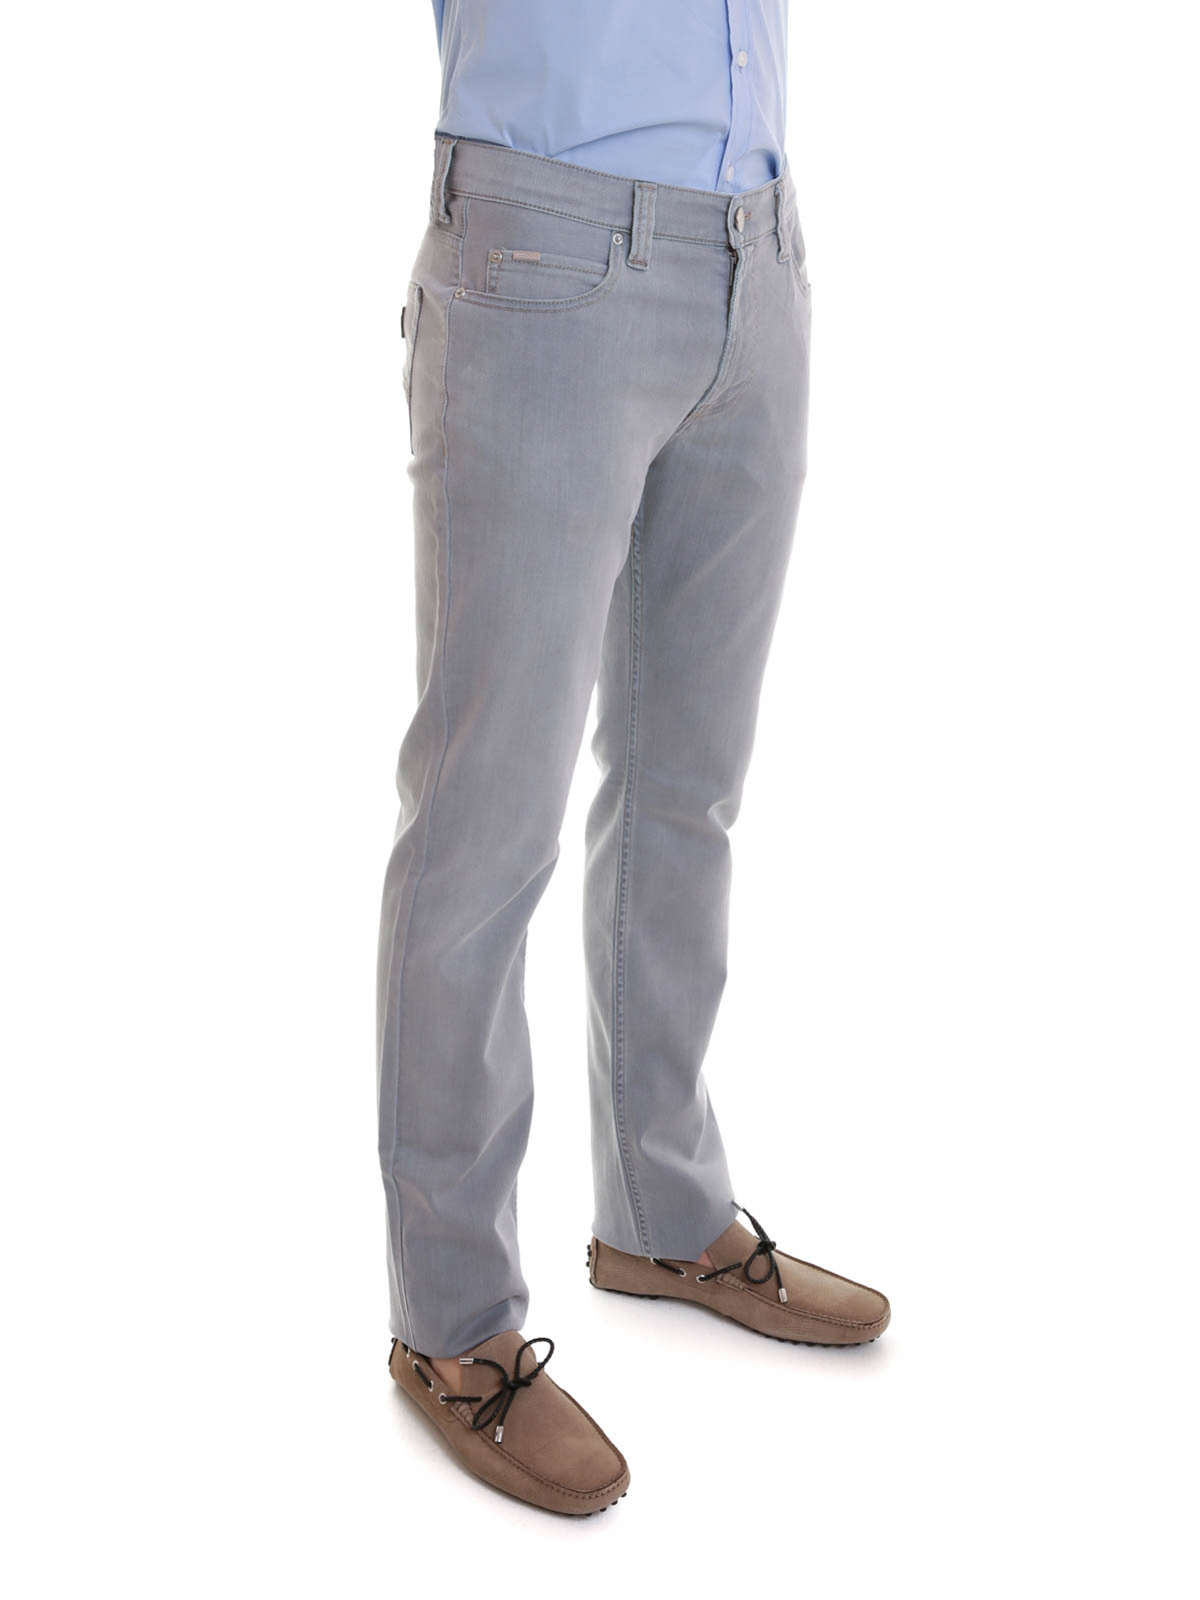 Armani Collezioni - J15 jeans 